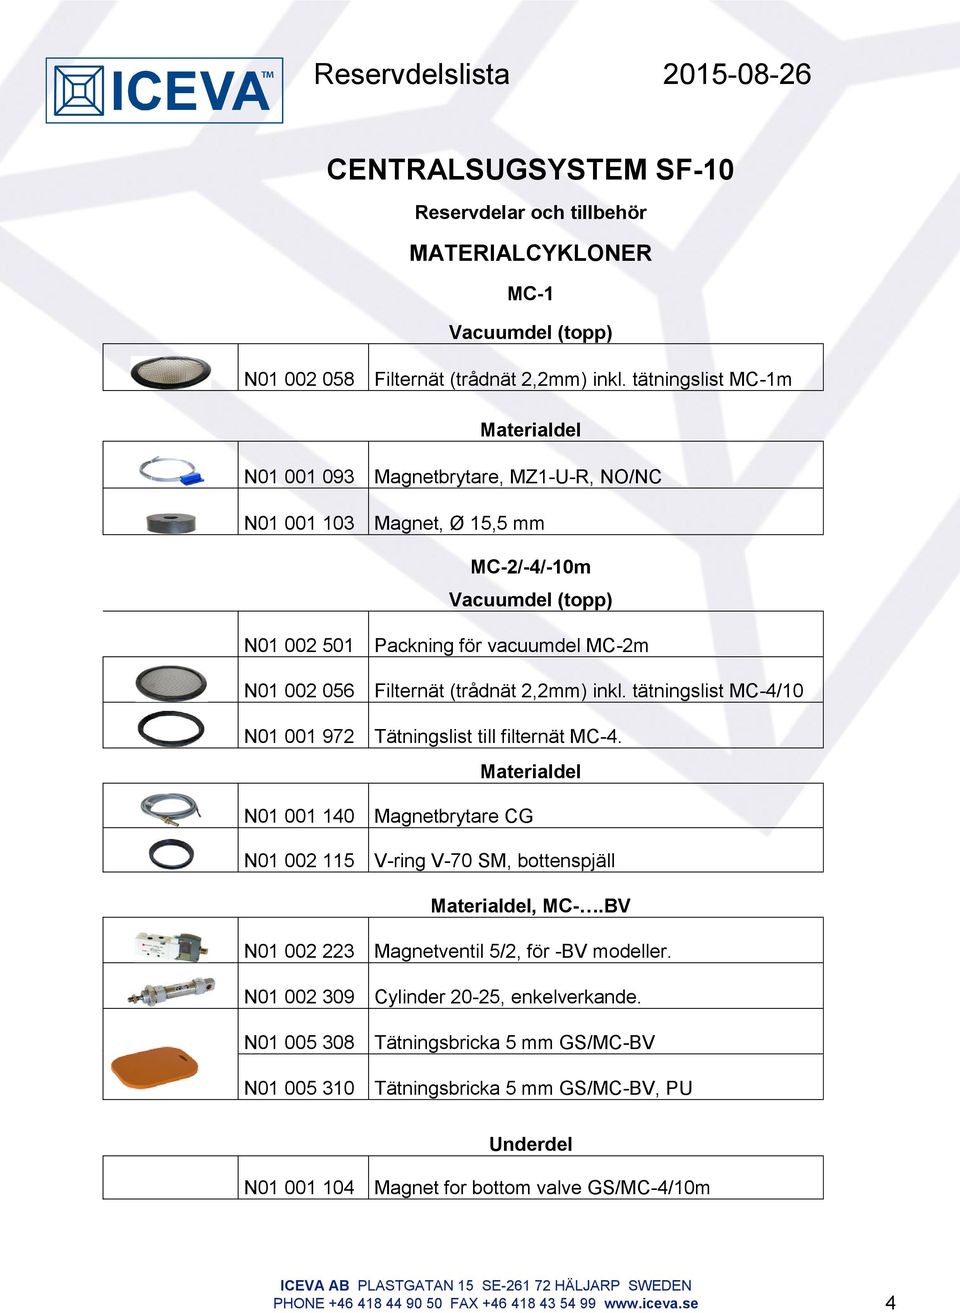 2,2mm) inkl. tätningslist MC-4/10 N01 001 972 Tätningslist till filternät MC-4. N01 001 140 Magnetbrytare CG N01 002 115 V-ring V-70 SM, bottenspjäll, MC-.